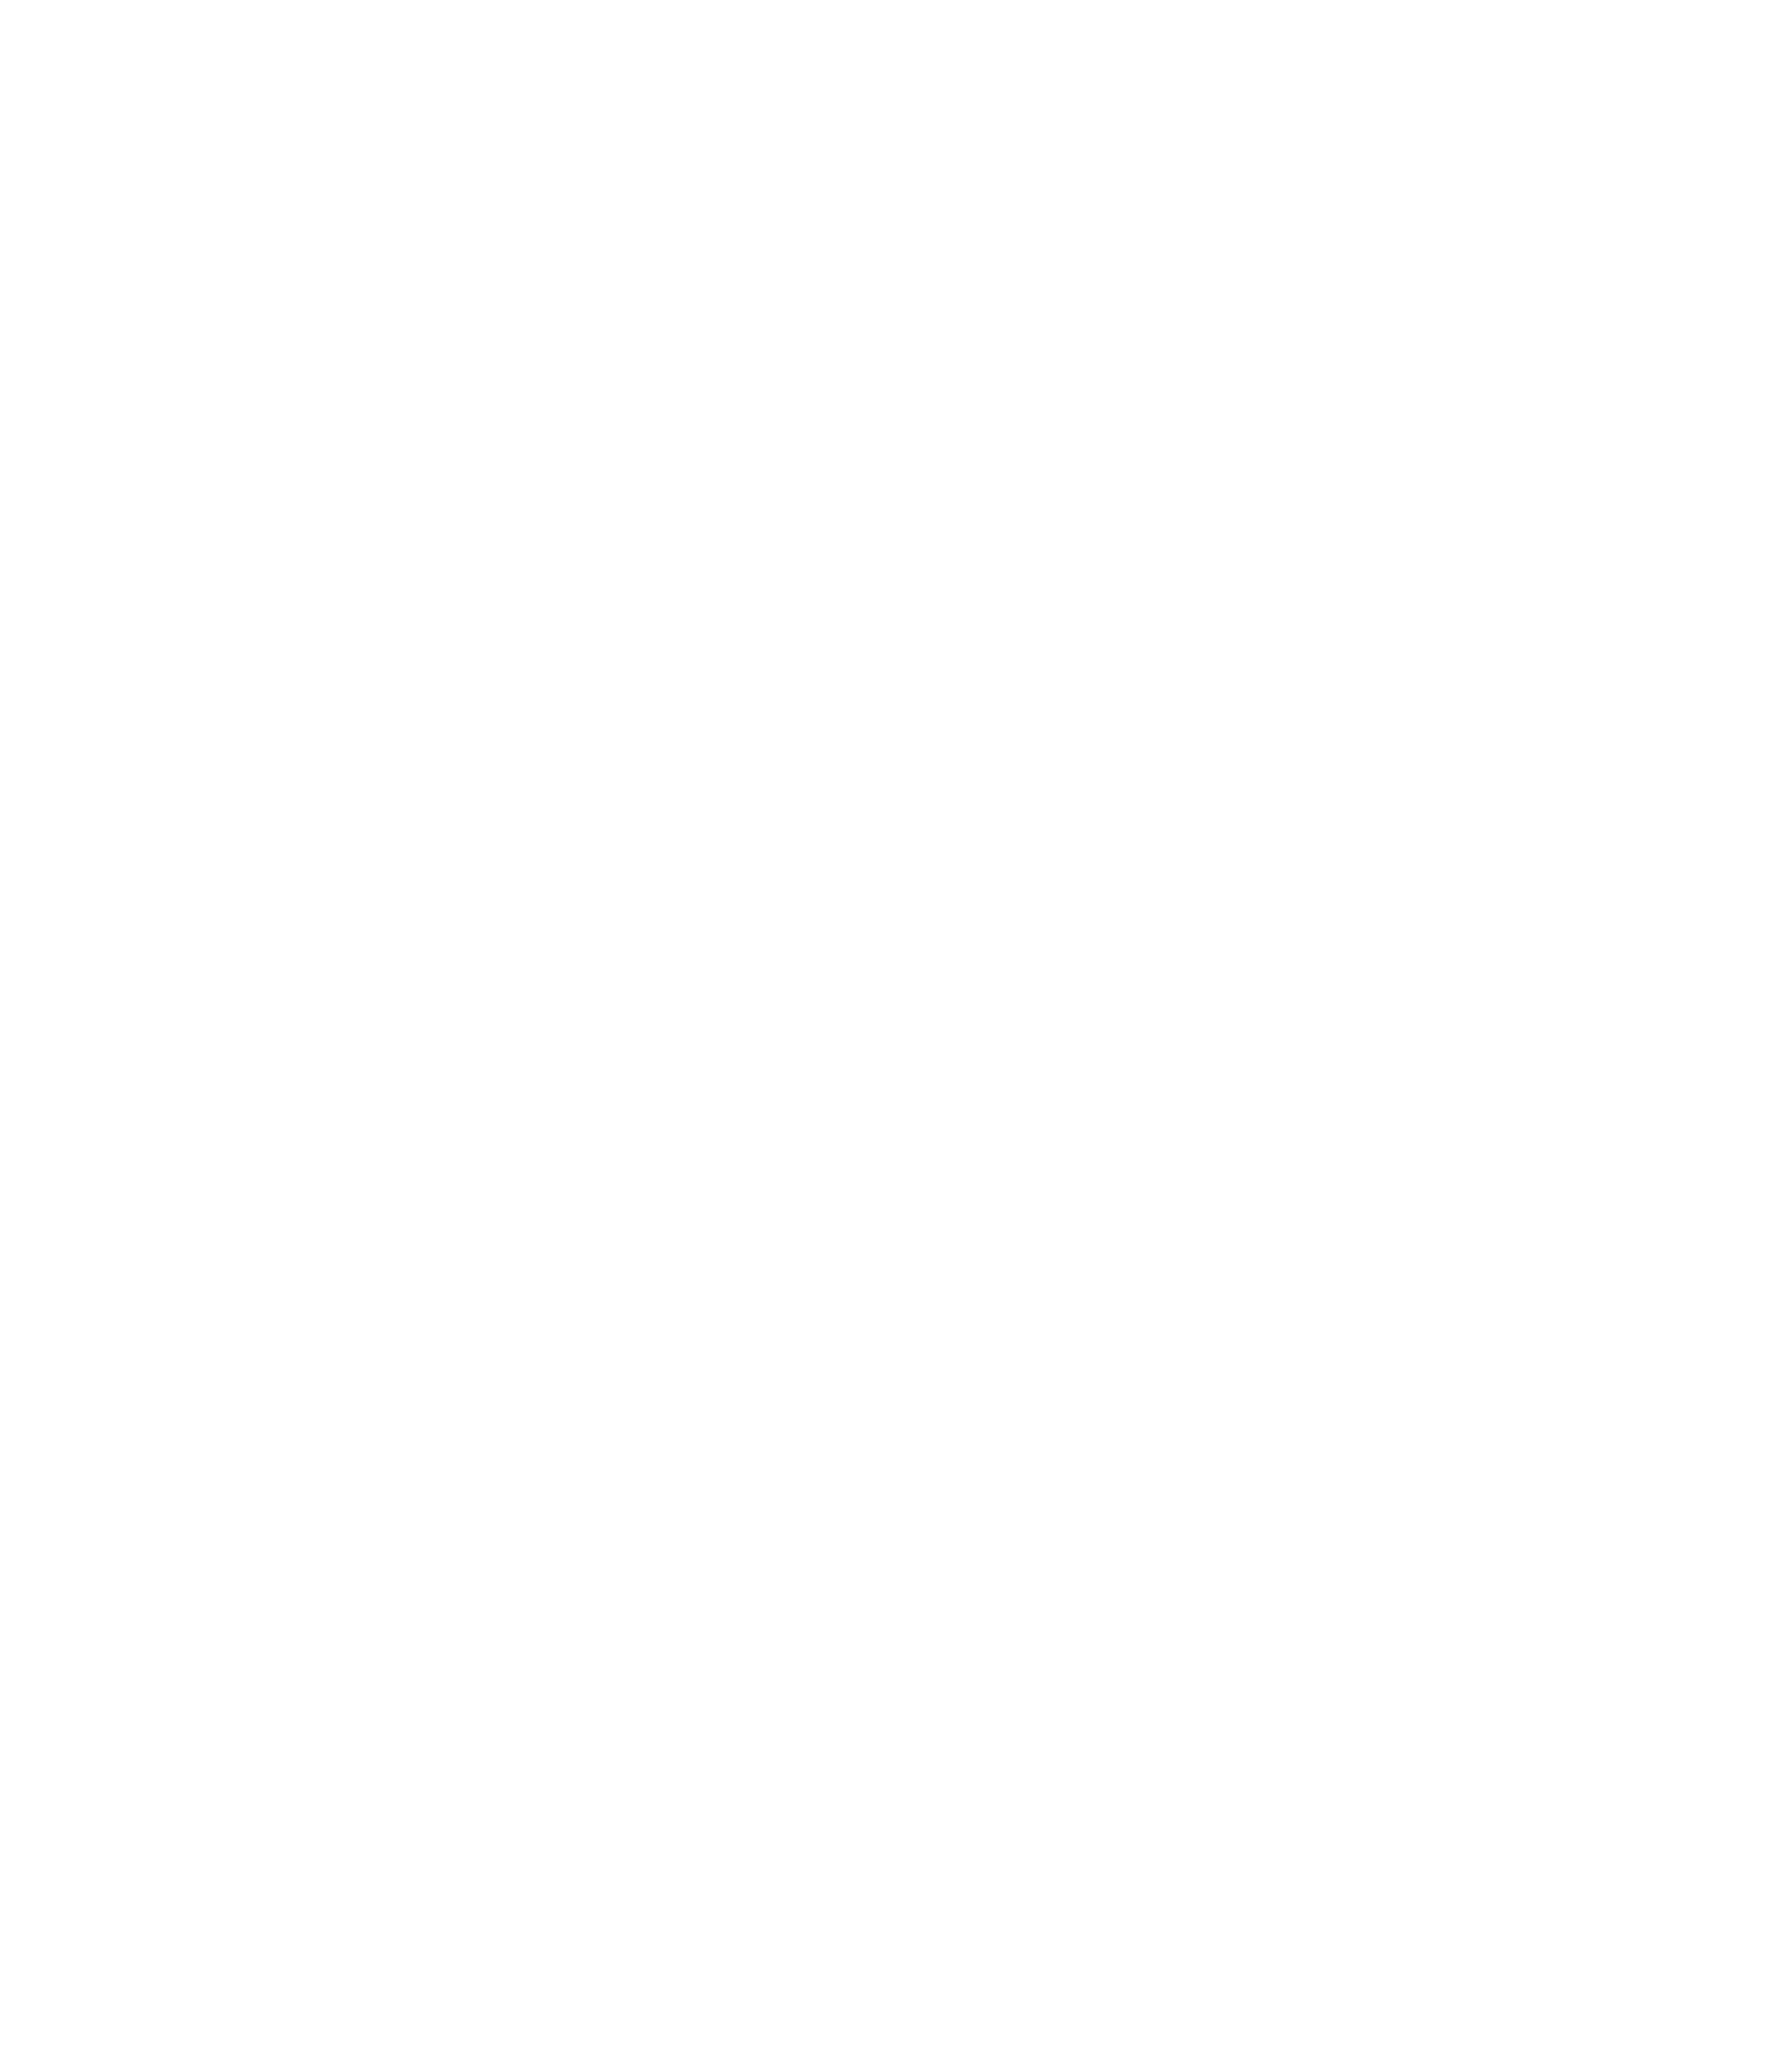 A Stronger Louisiana